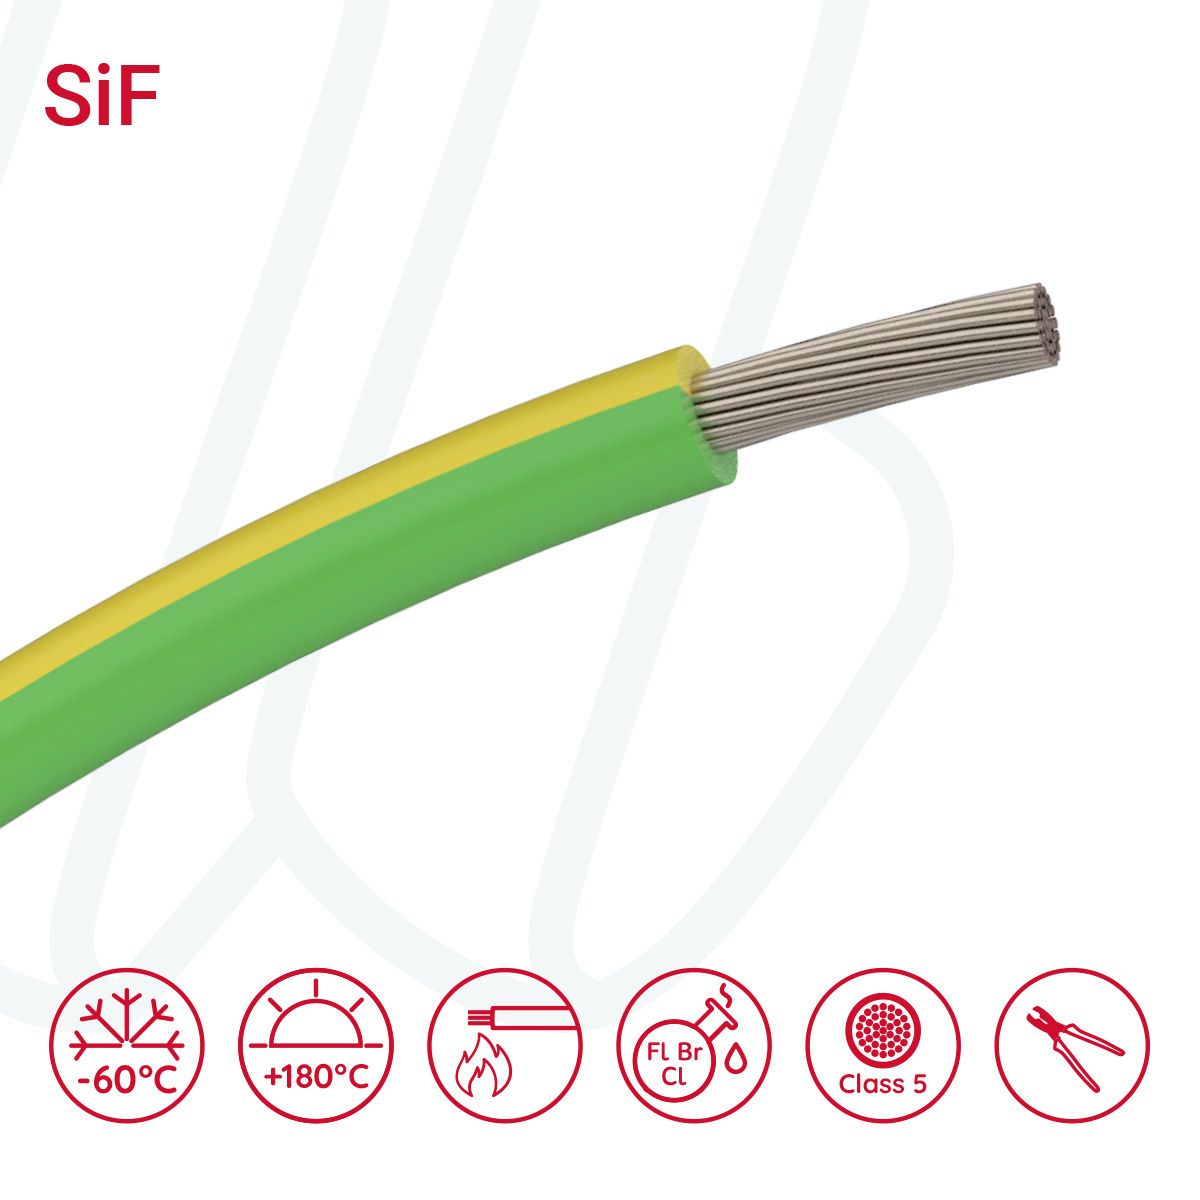 Провід термостійкий SiF 01X10 жовто-зелений, 01, 10